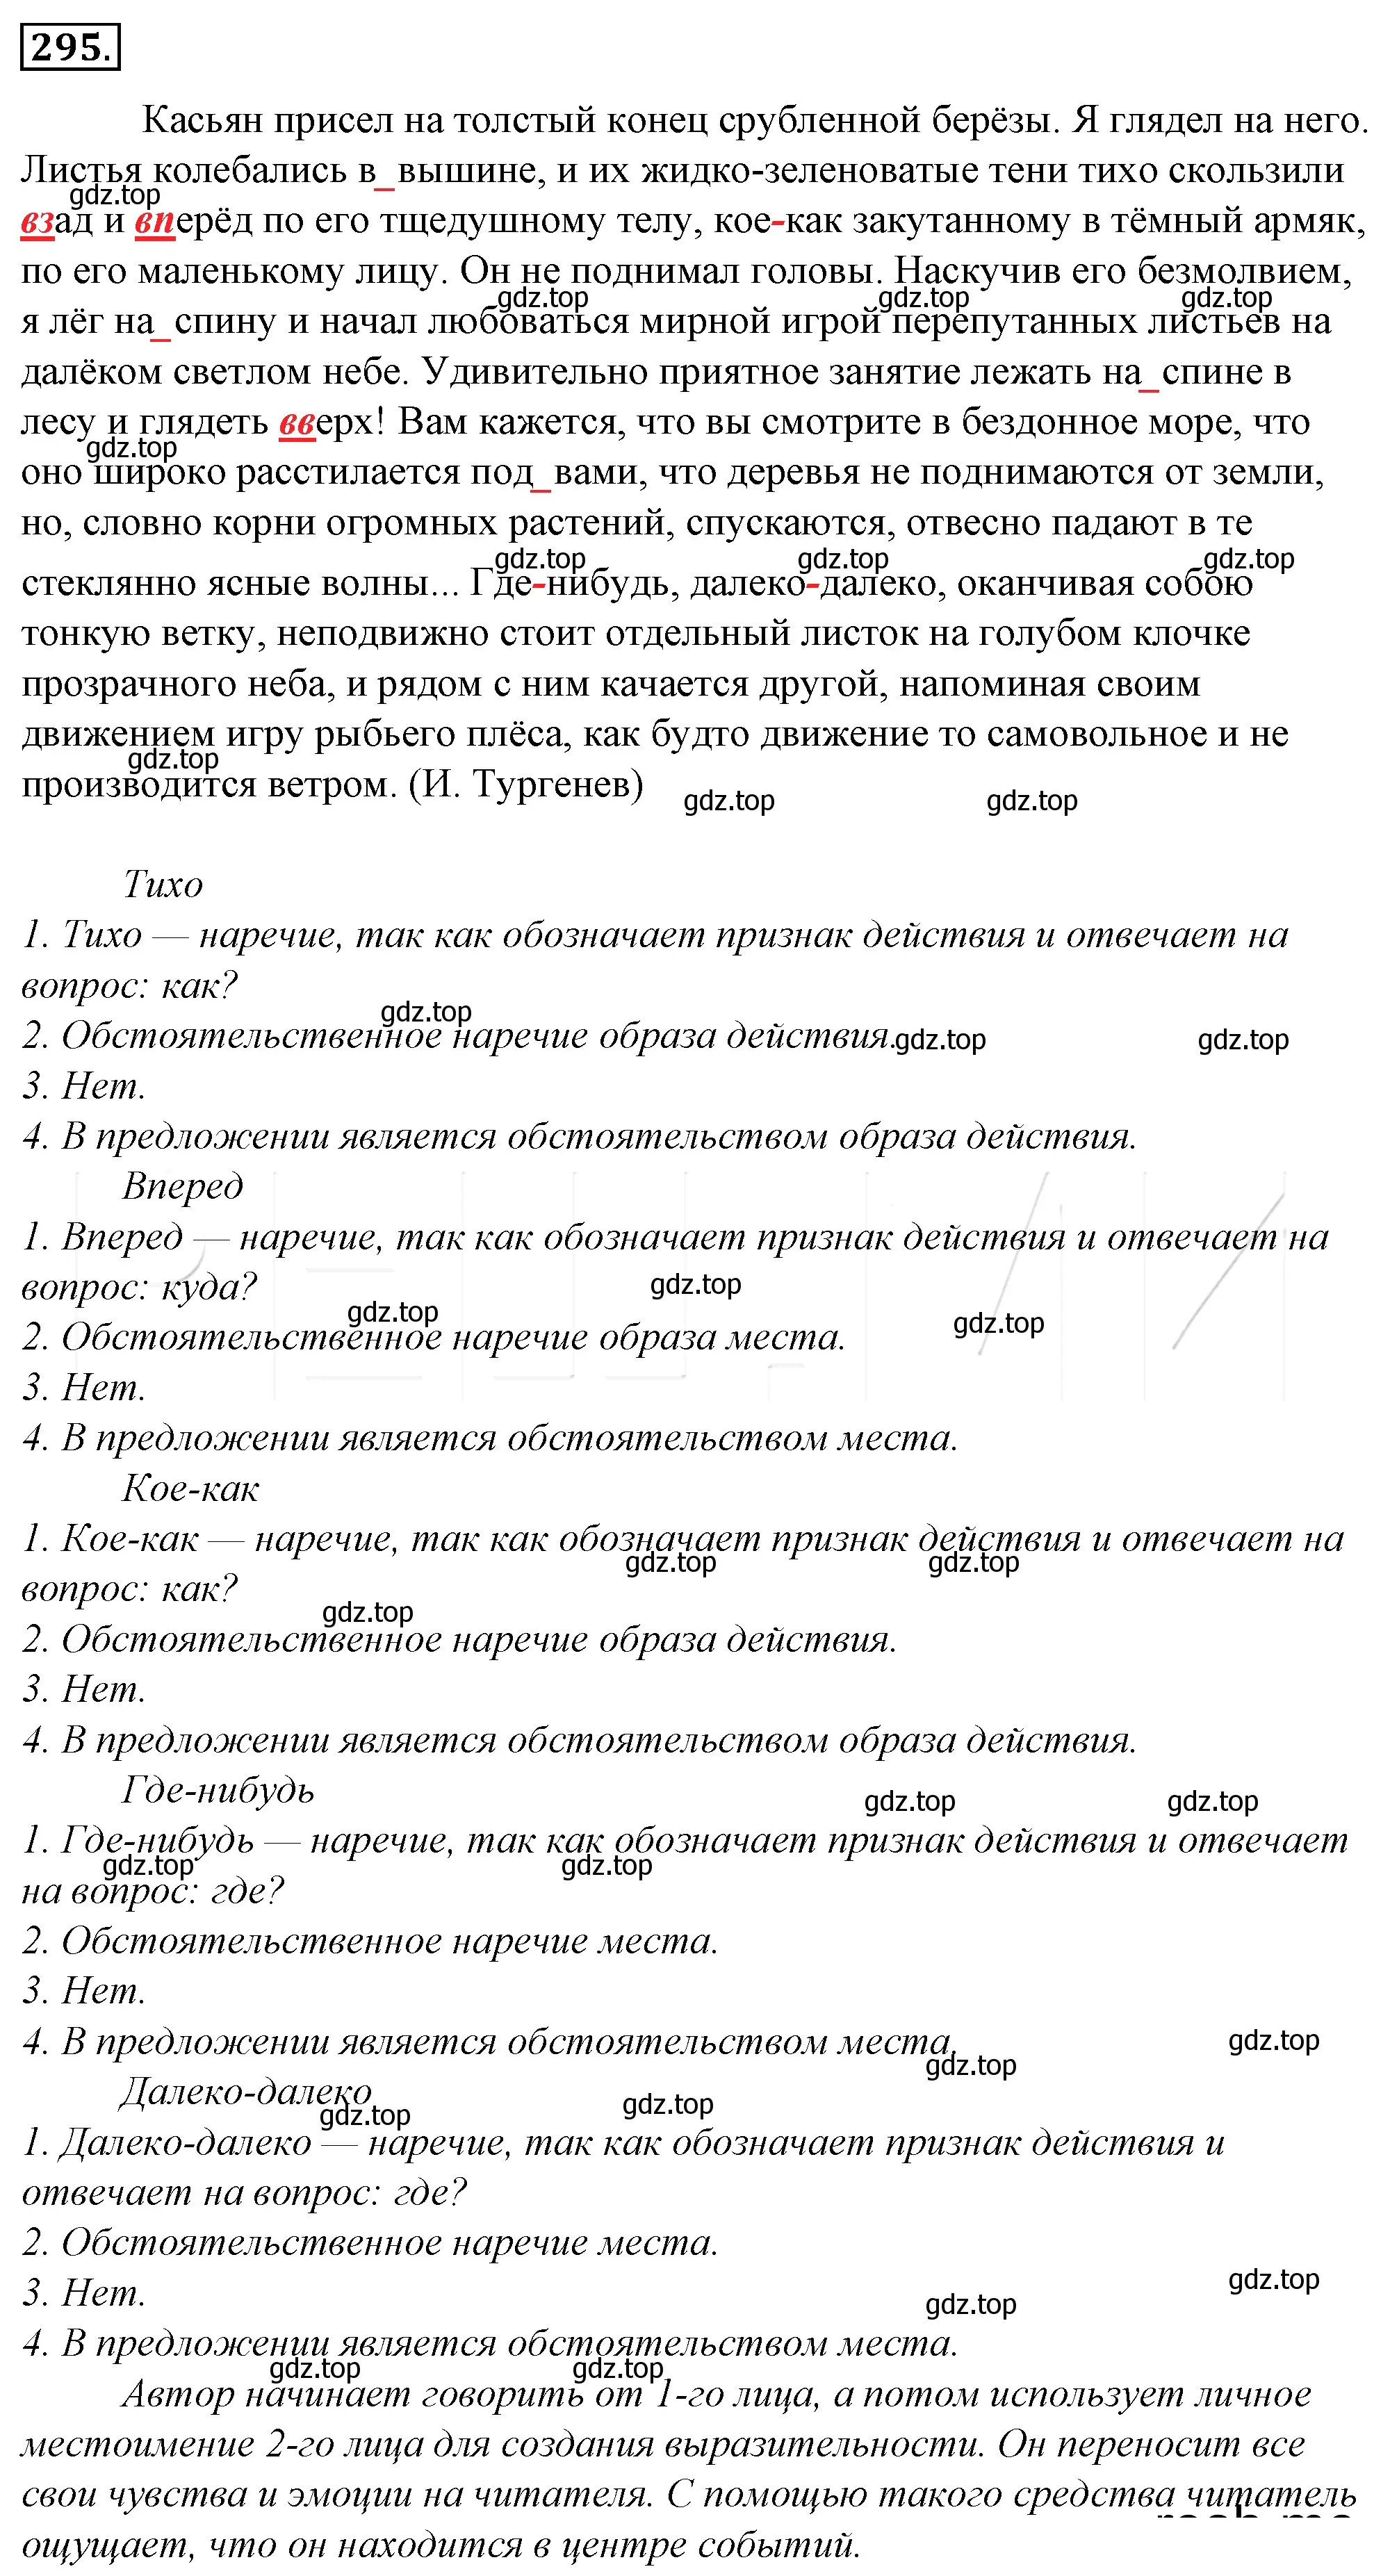 Решение 4. номер 319 (страница 295) гдз по русскому языку 10-11 класс Гольцова, Шамшин, учебник 1 часть